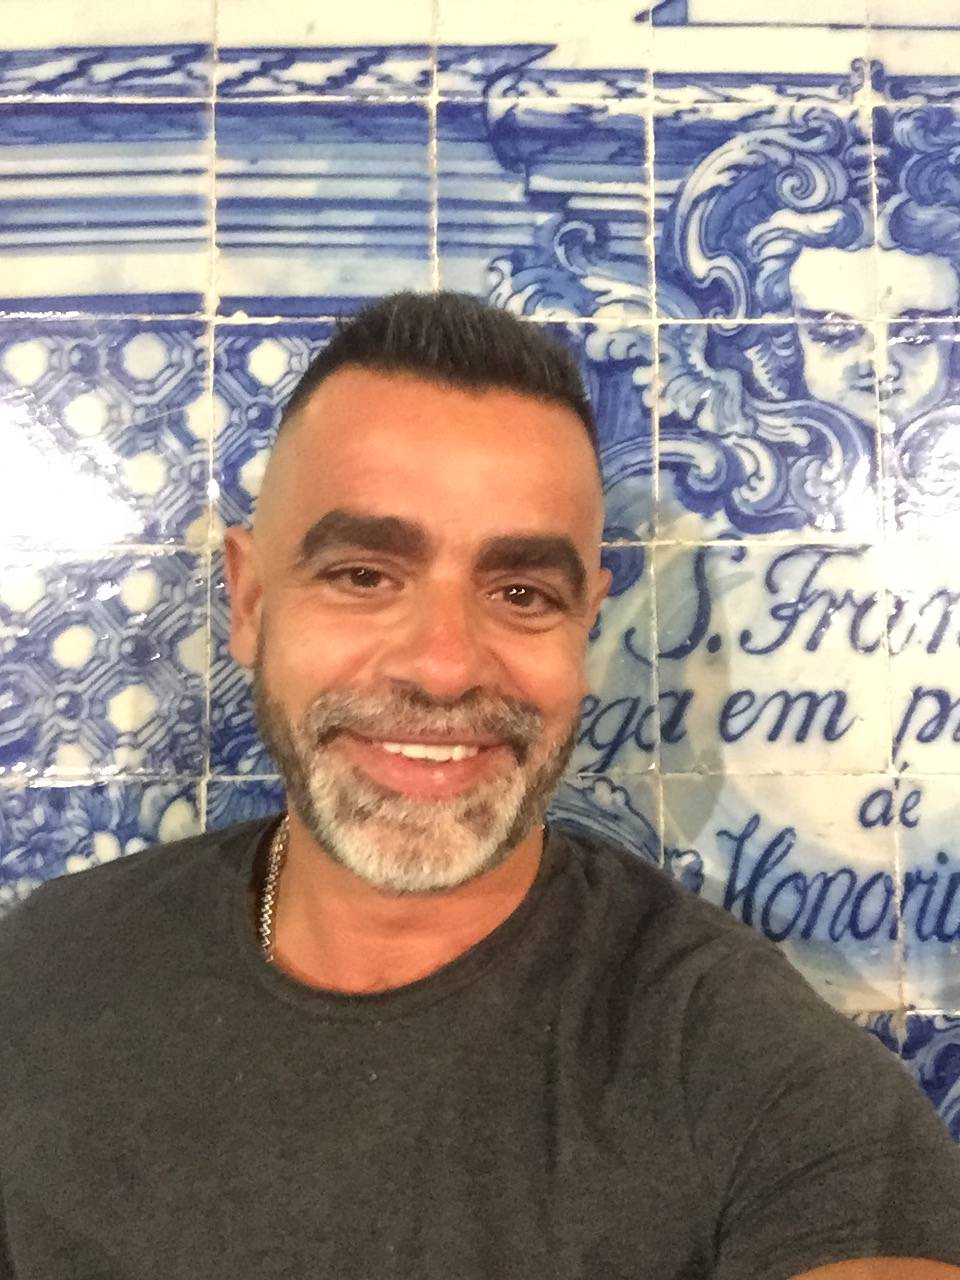 Paulo Arantes - Perito Avaliador | Consultor - Porto - Avaliação de Imóveis